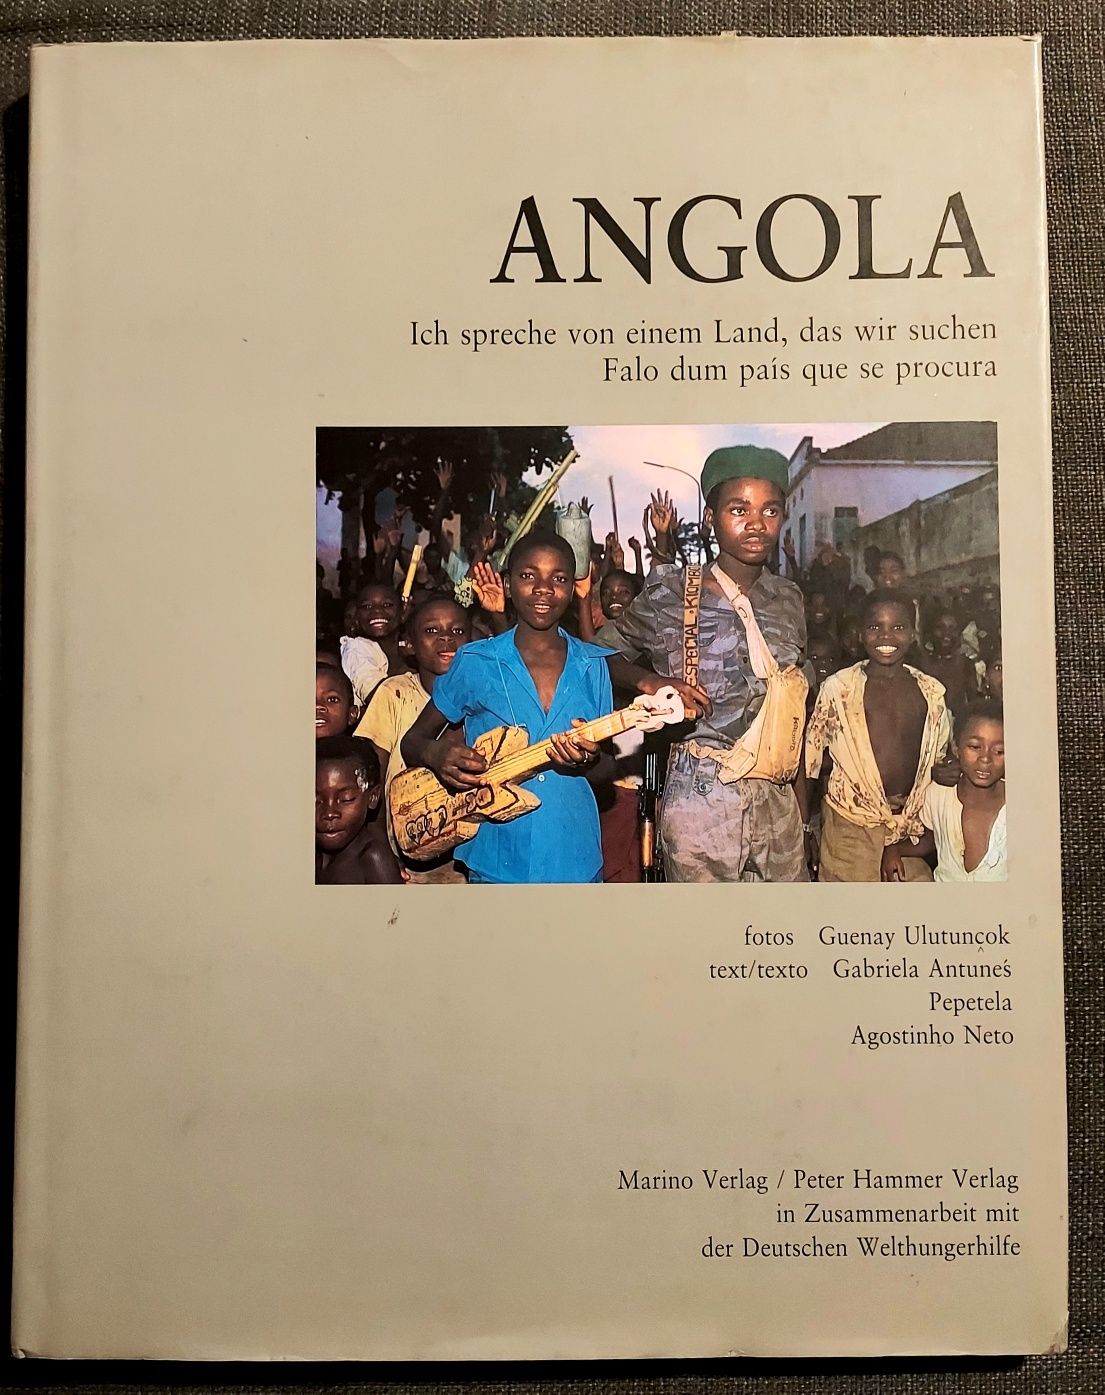 Angola - Falo dum país que se procura